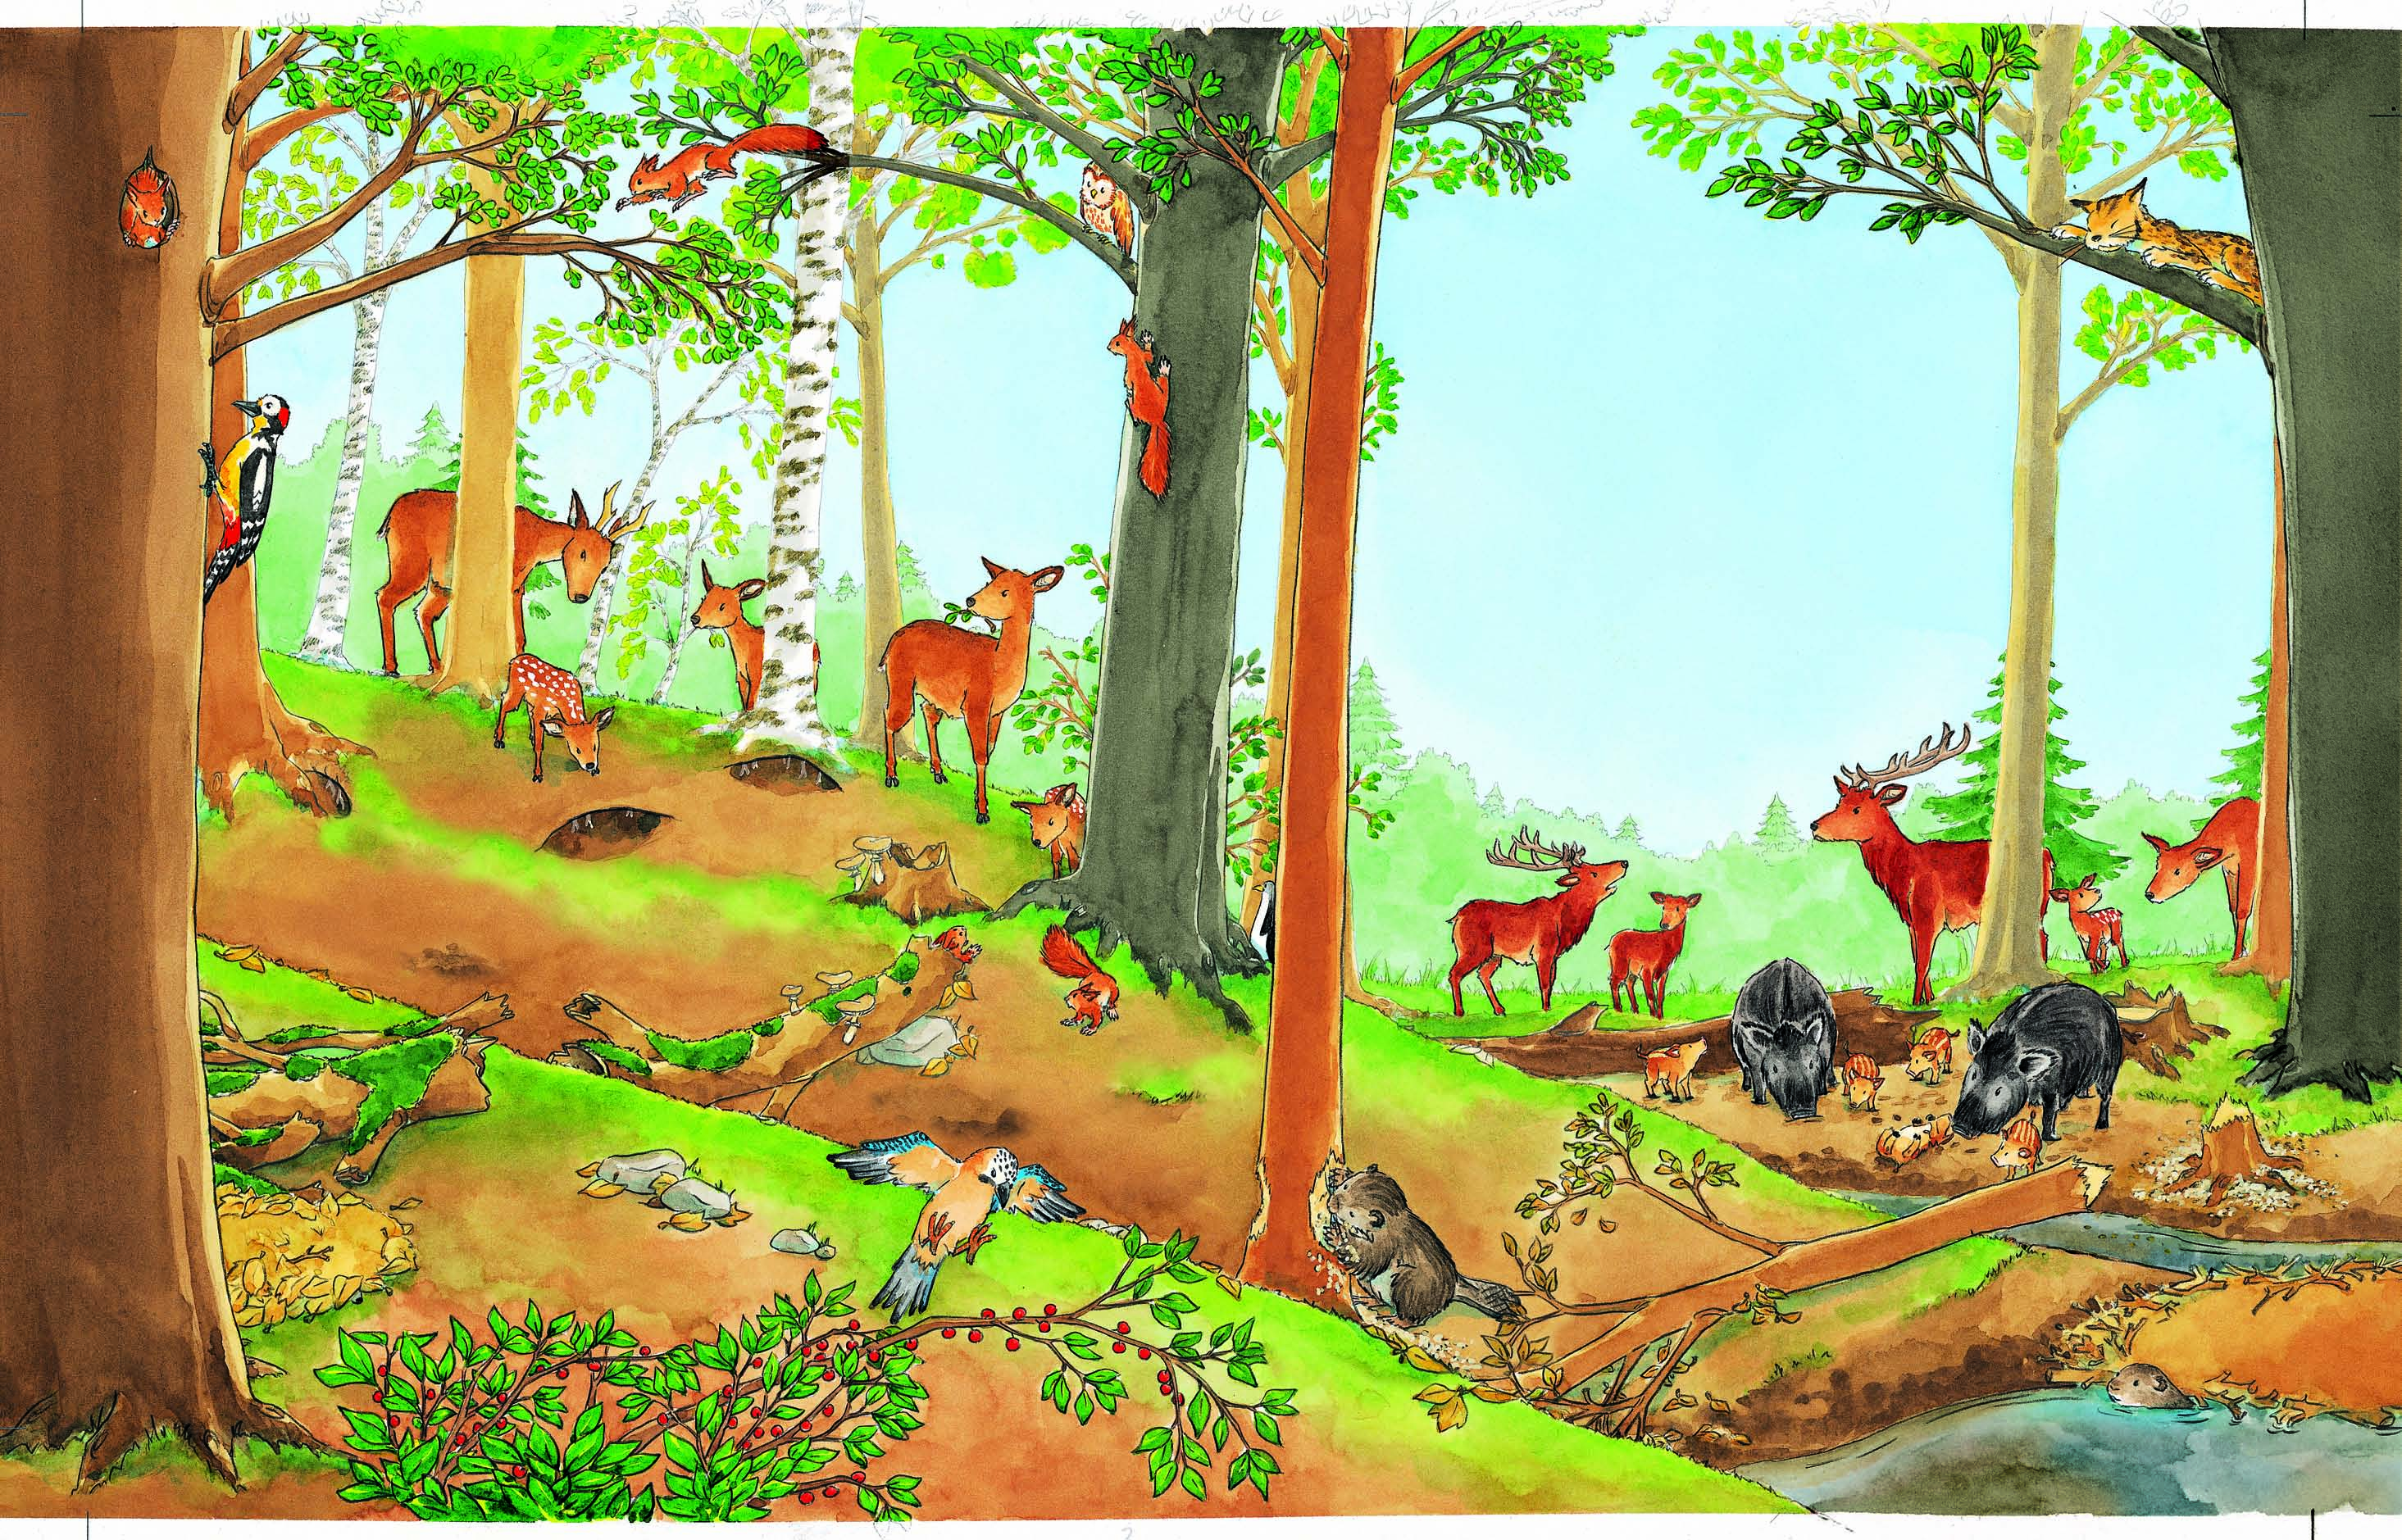 D00_E_98_wiwj_wald_00a.qxp..00 8:8 Uhr Seite 9 Welche Tiere leben im Wald? Im Bild hat sich ein Tier versteckt, das nicht in Wäldern lebt. Kannst du es finden?